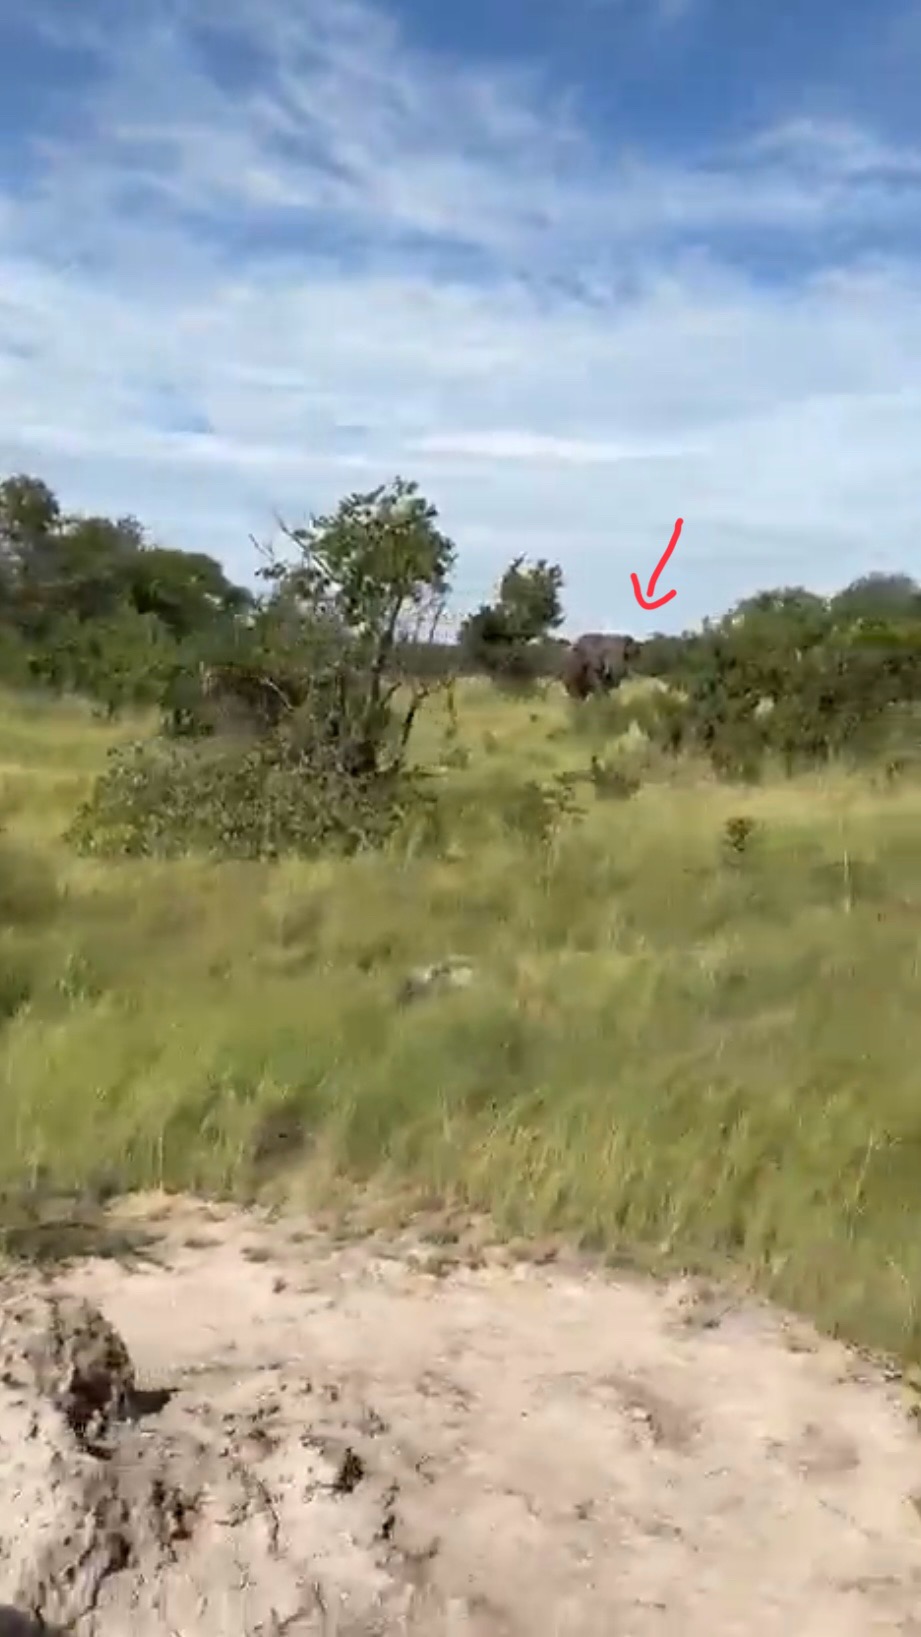 越野车穿野原野之际，一头大象在附近出现。